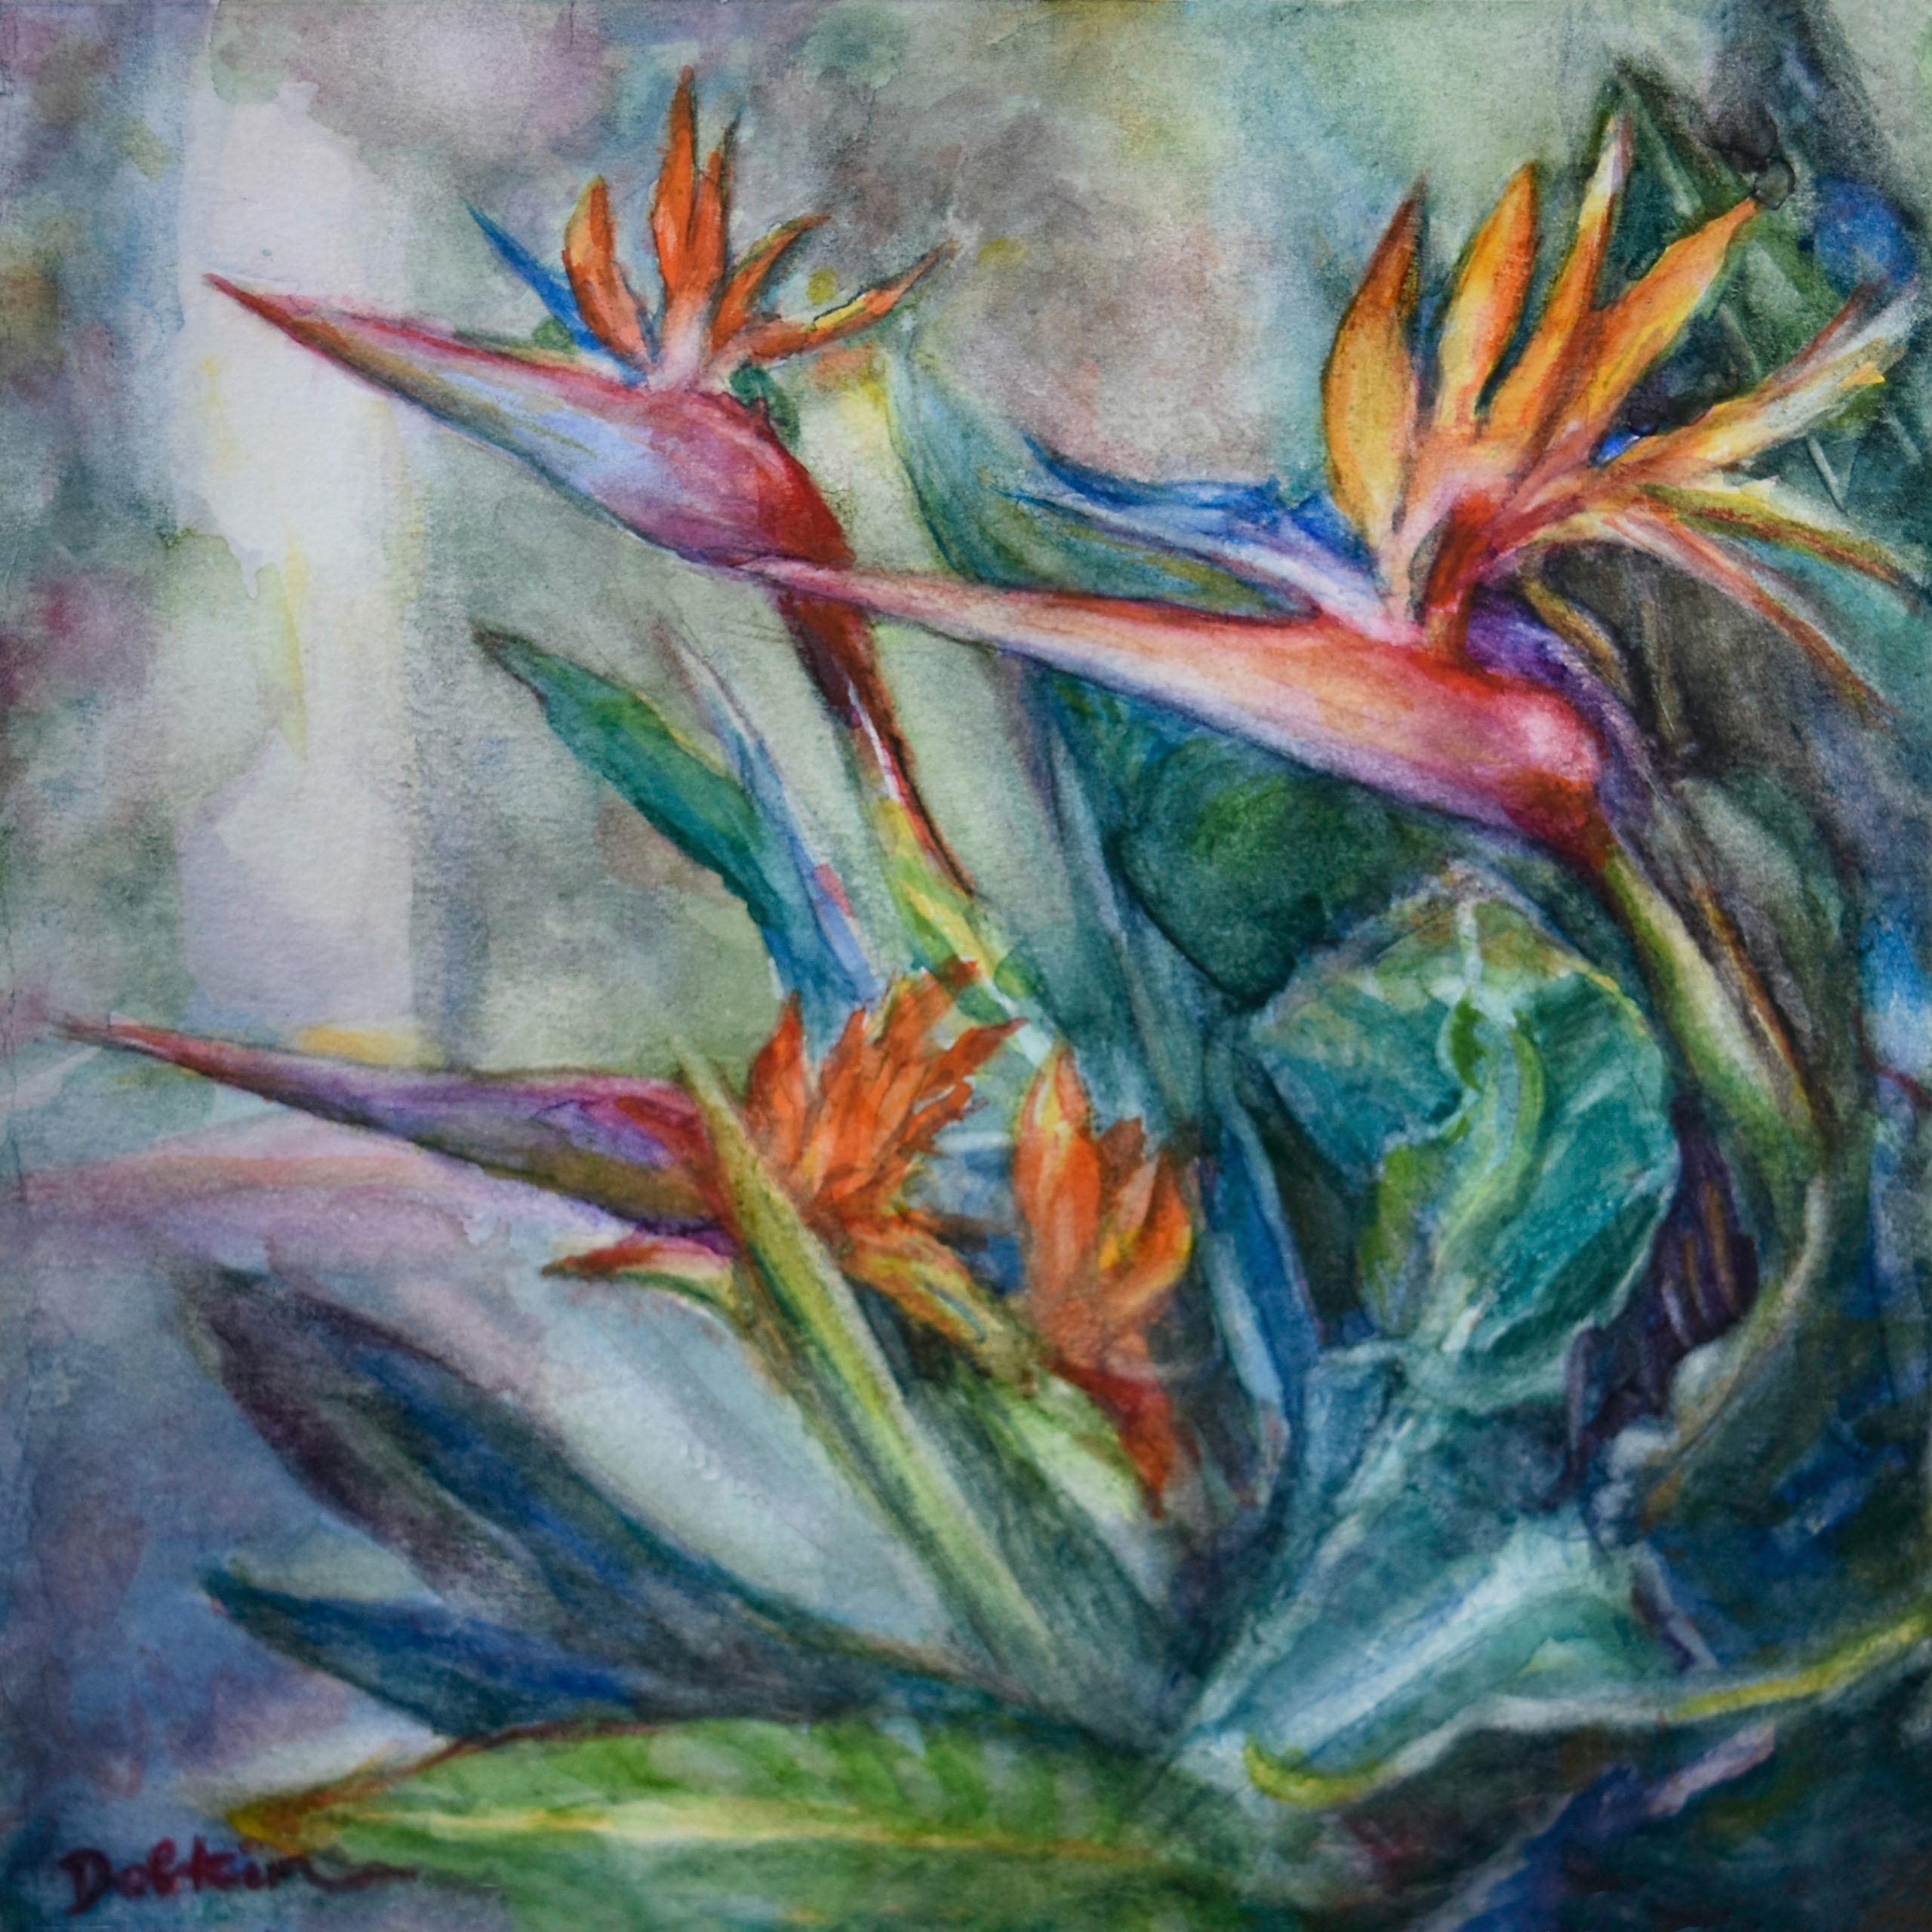 17 Debra Dobkin "Birds March Into April" 9x9 Watercolor on Paper $470